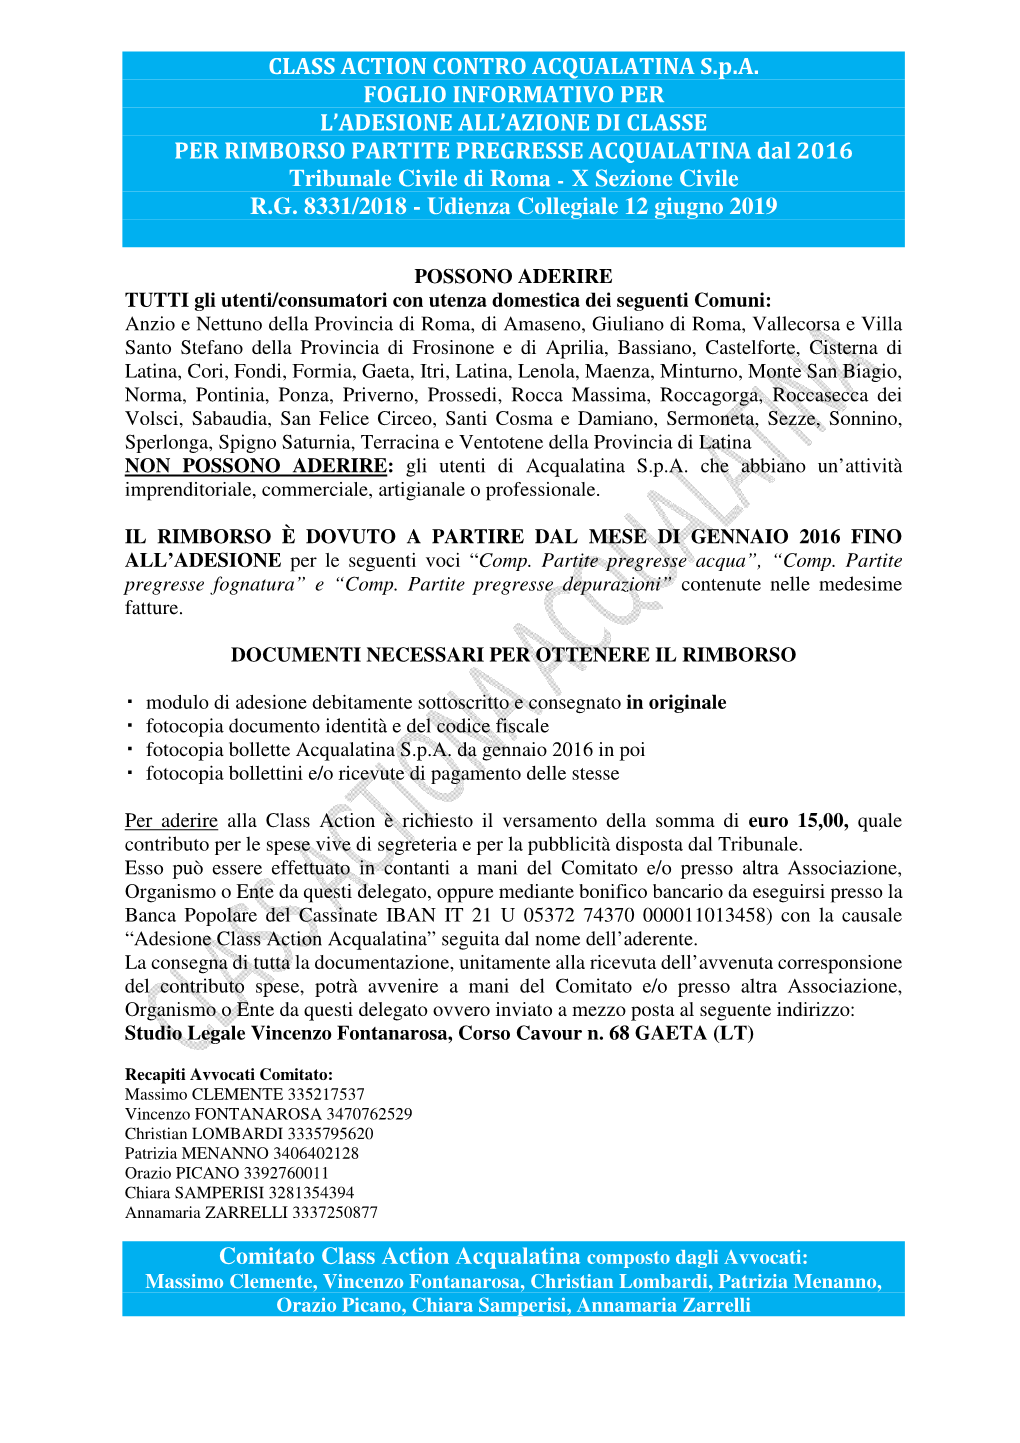 Foglio Informativo Adesione Classaction Acqualatina